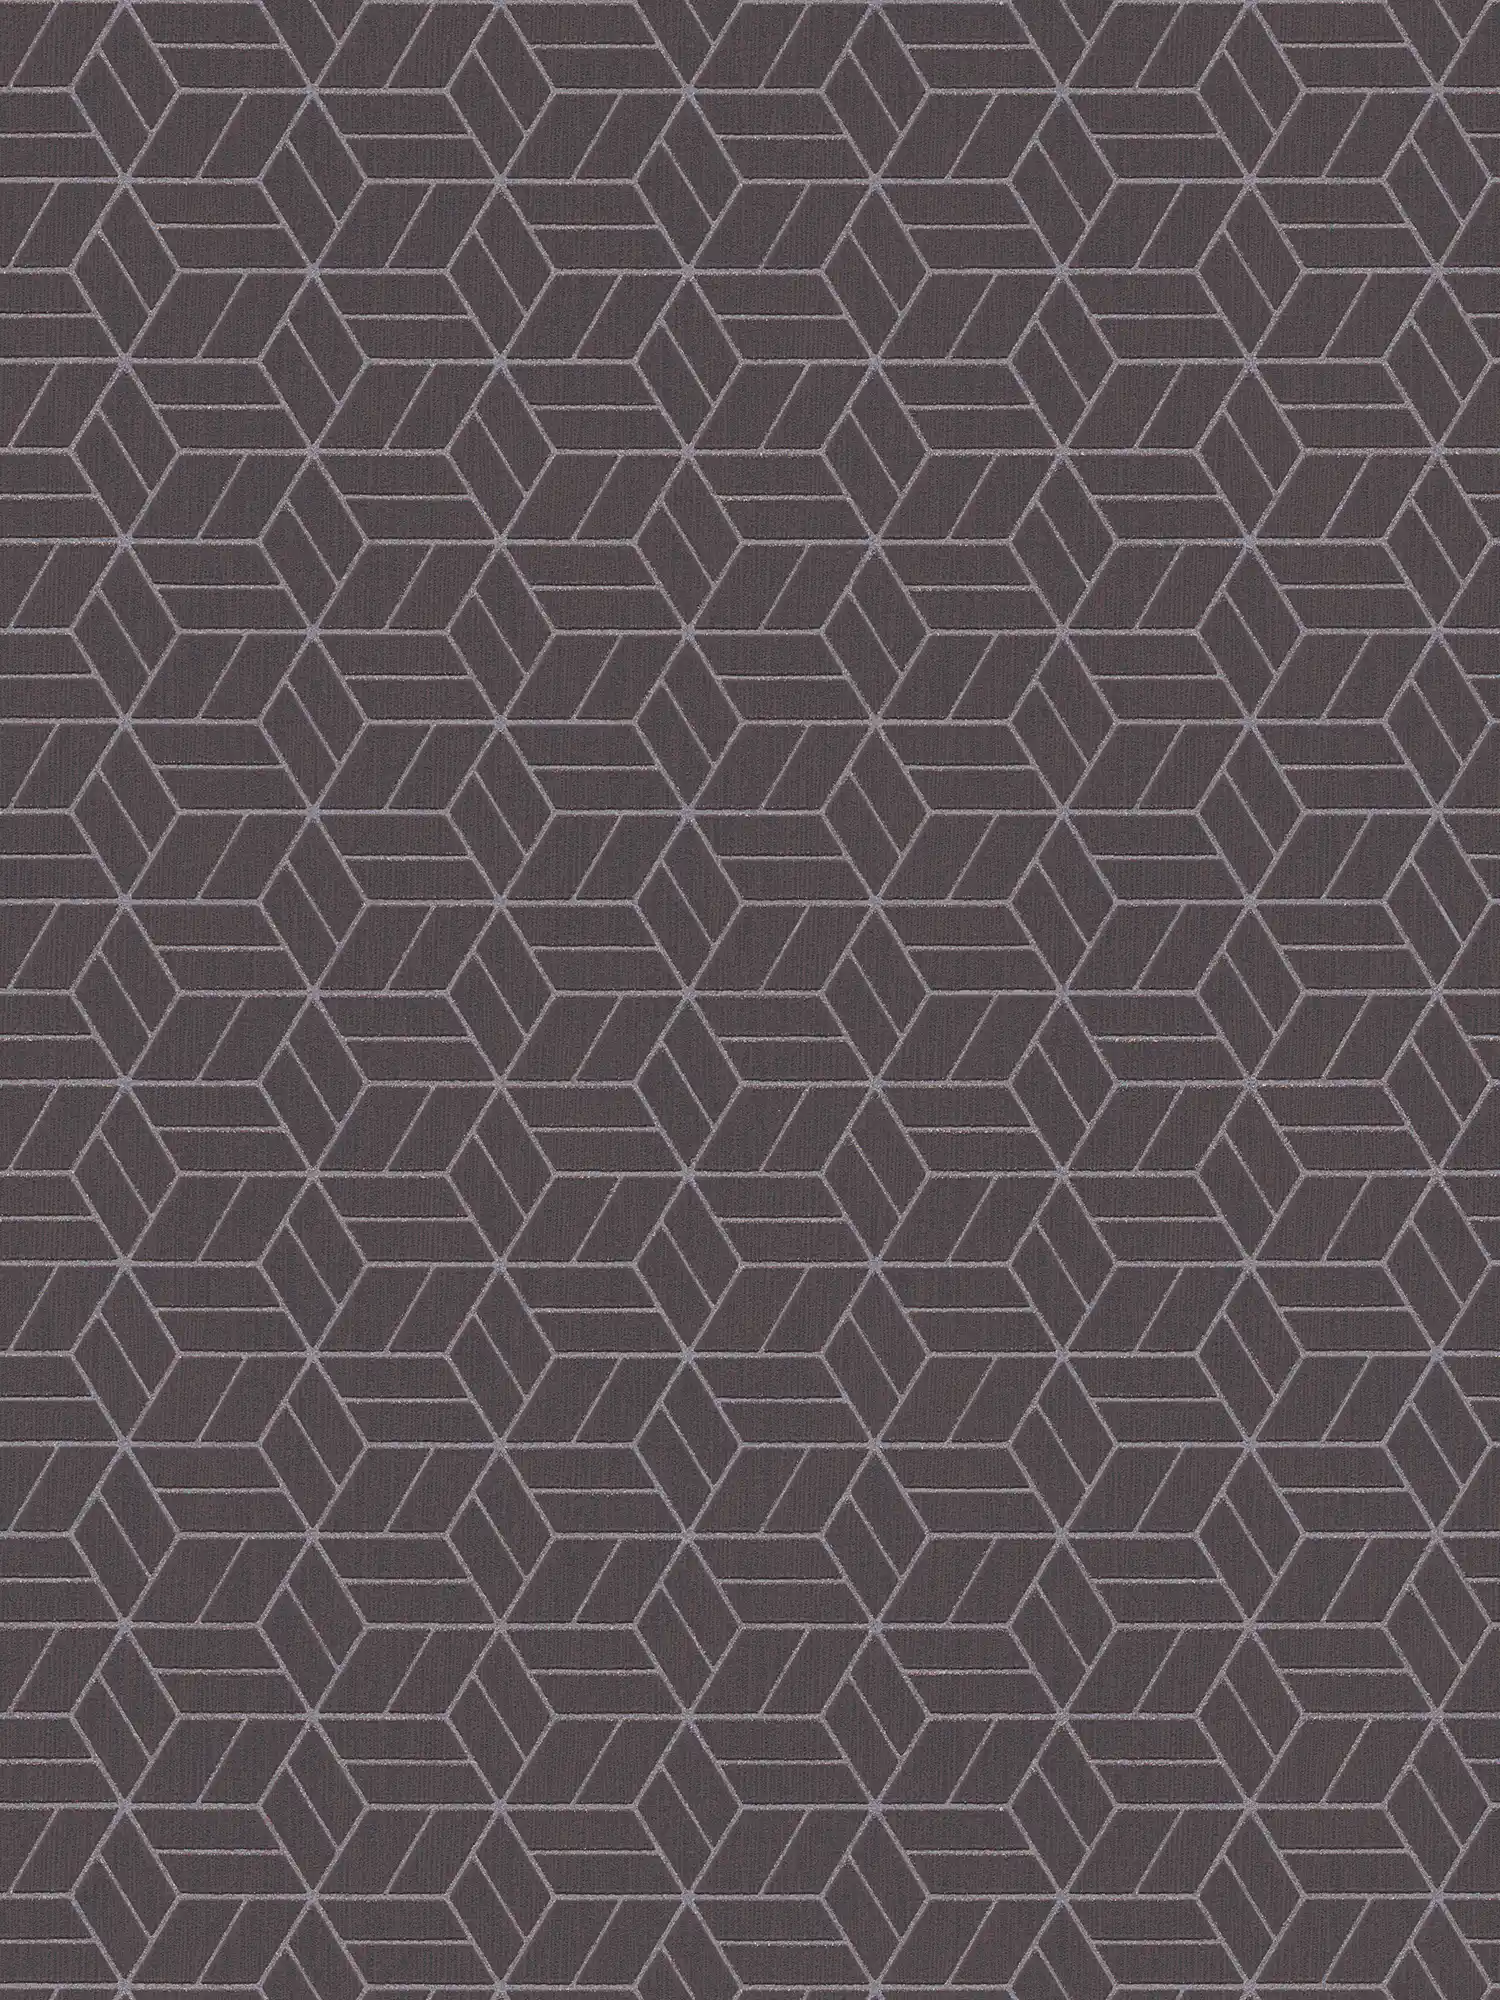 behang geometrisch patroon & glittereffect - zwart, zilver
